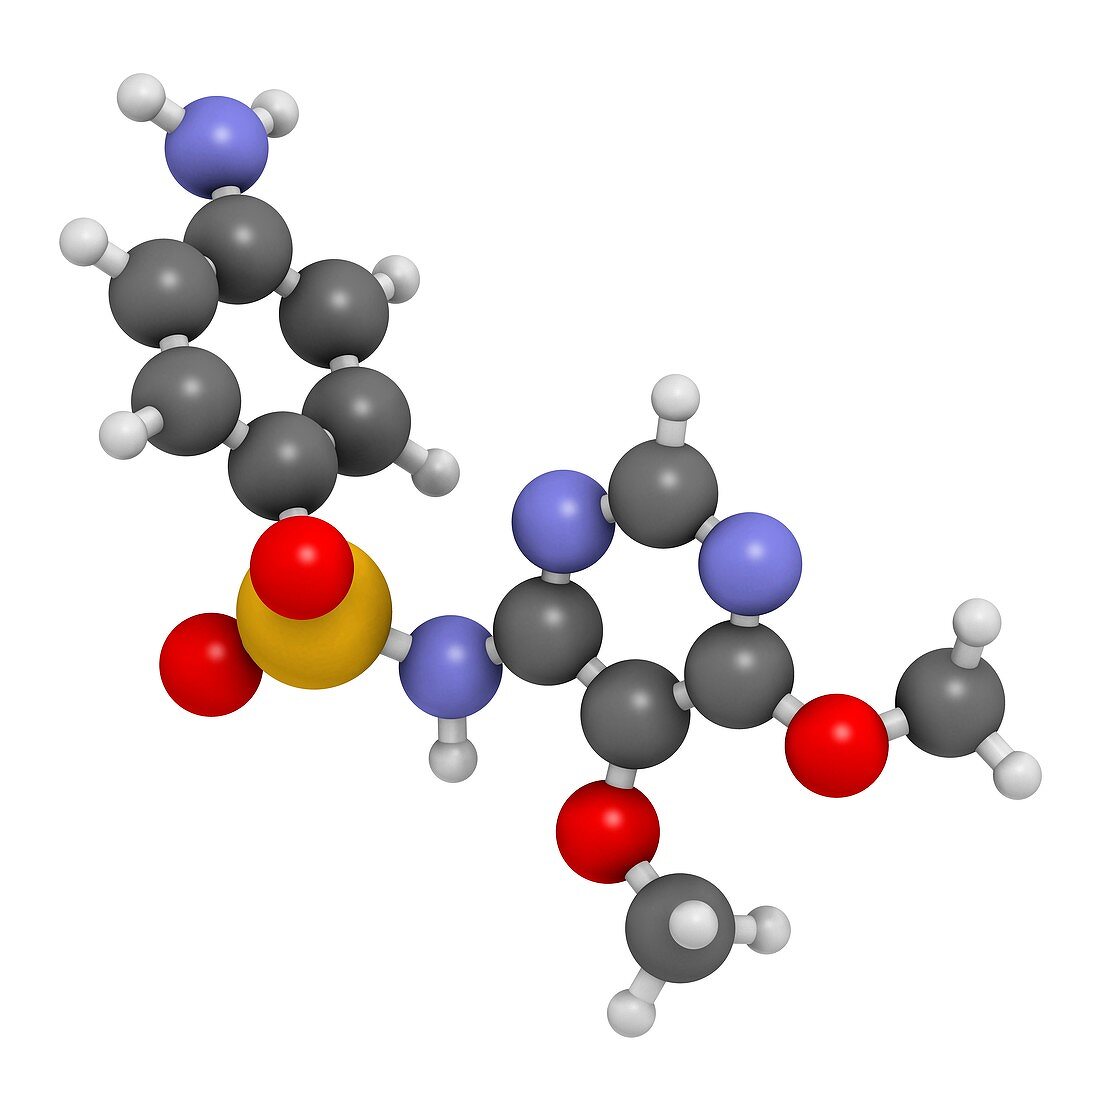 Sulfadoxine malaria drug molecule